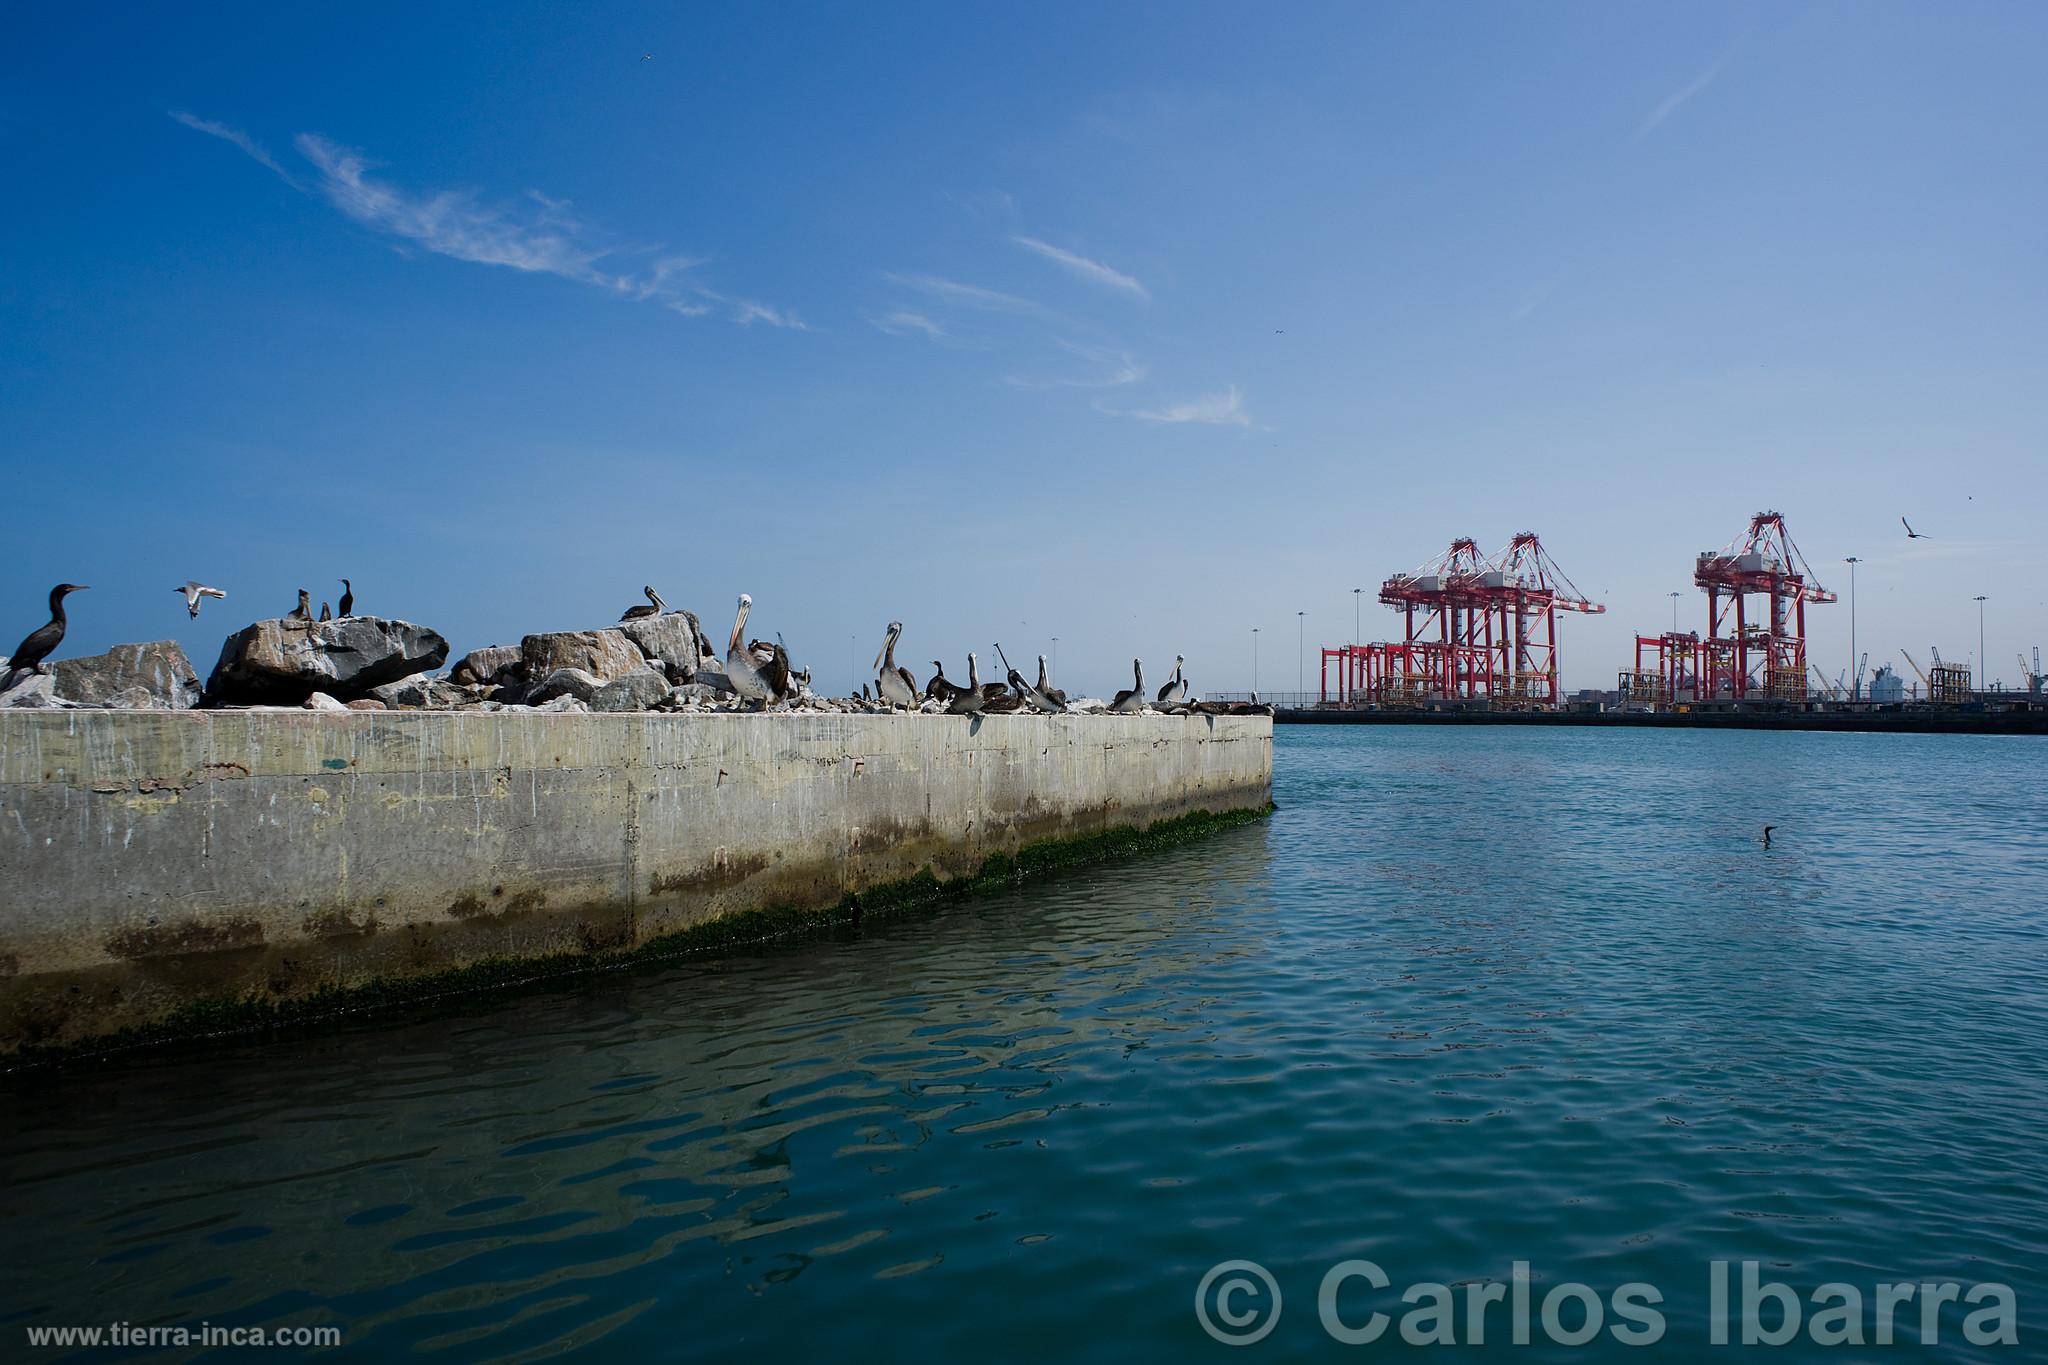 Muelle Sur del puerto del Callao